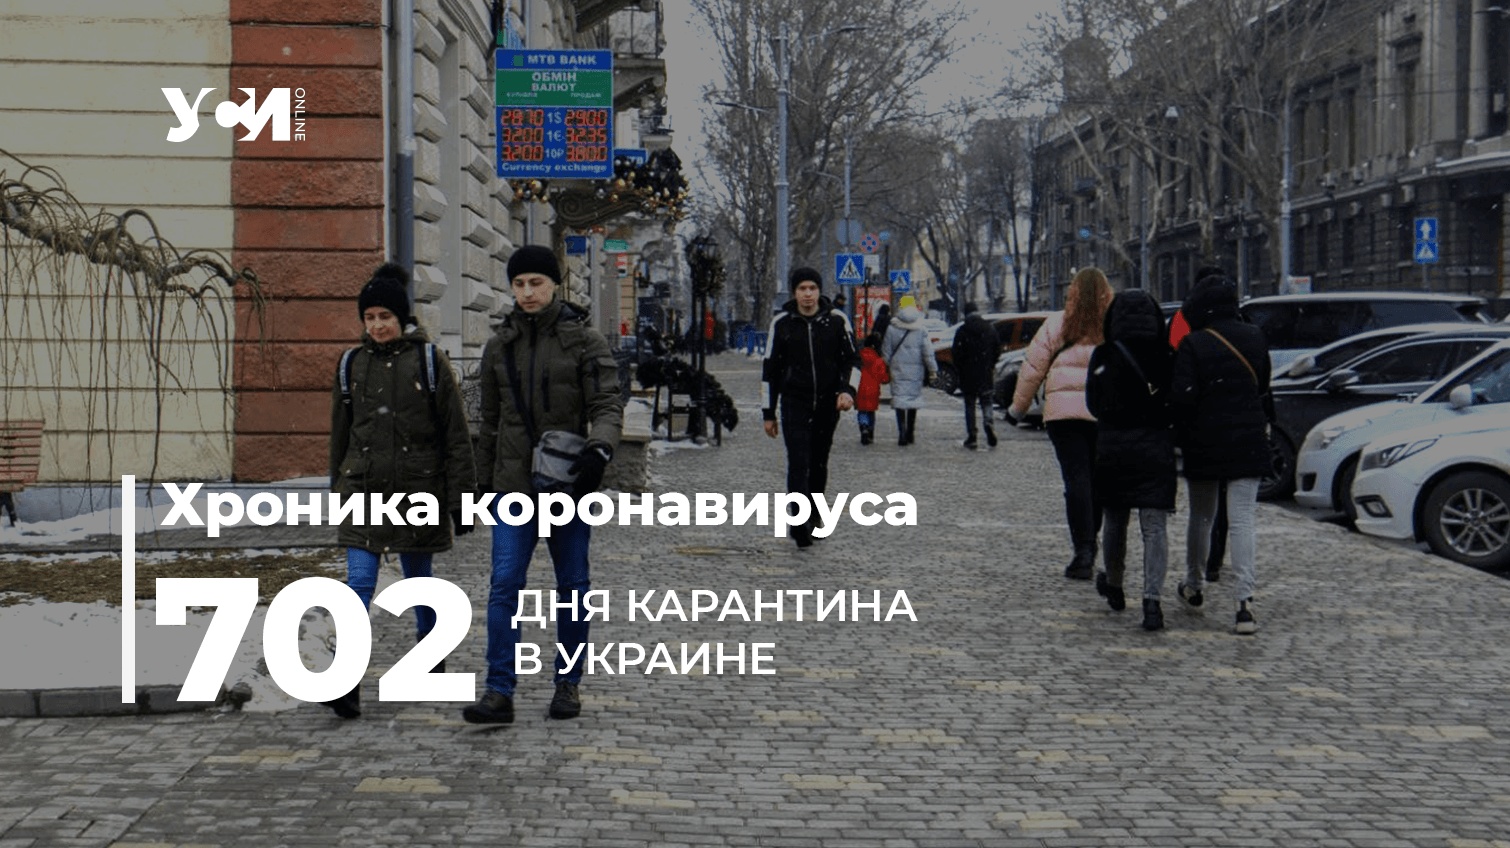 Пандемия: в Одесской области – почти 4 тысячи заболевших «фото»